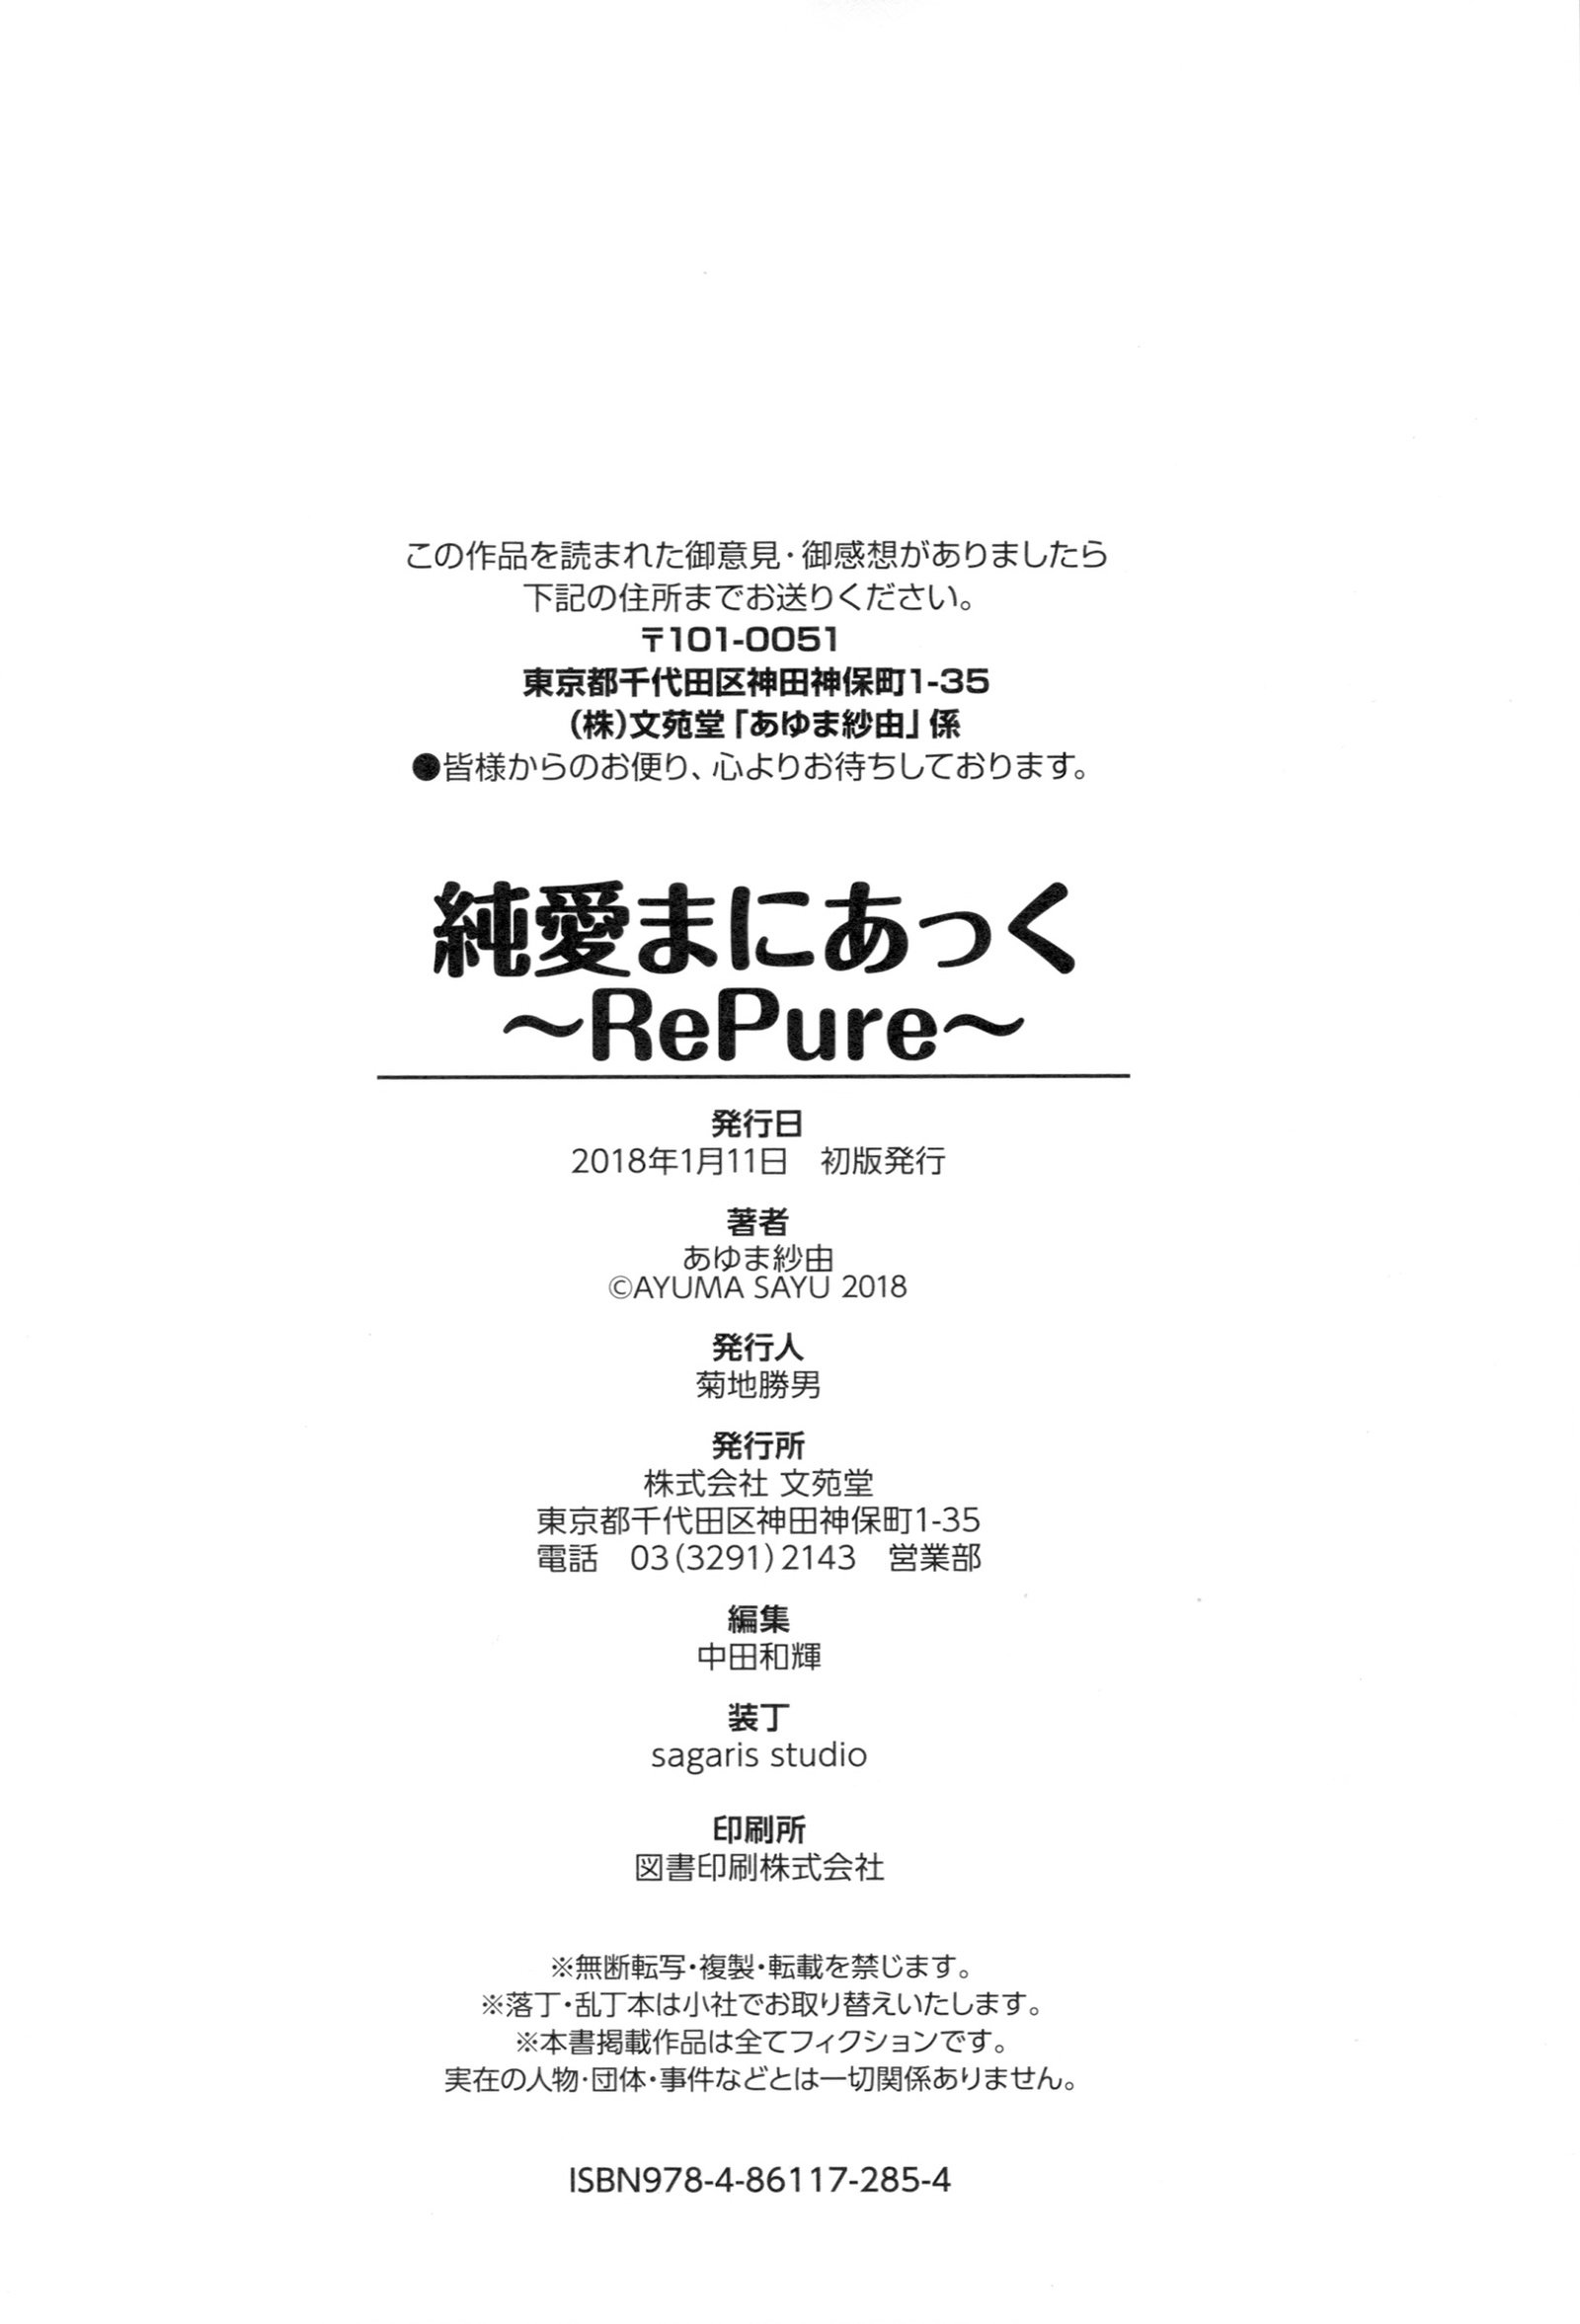 ジュナイマニアック〜RePure〜B2タペストリー月メロンブックス幻想盤